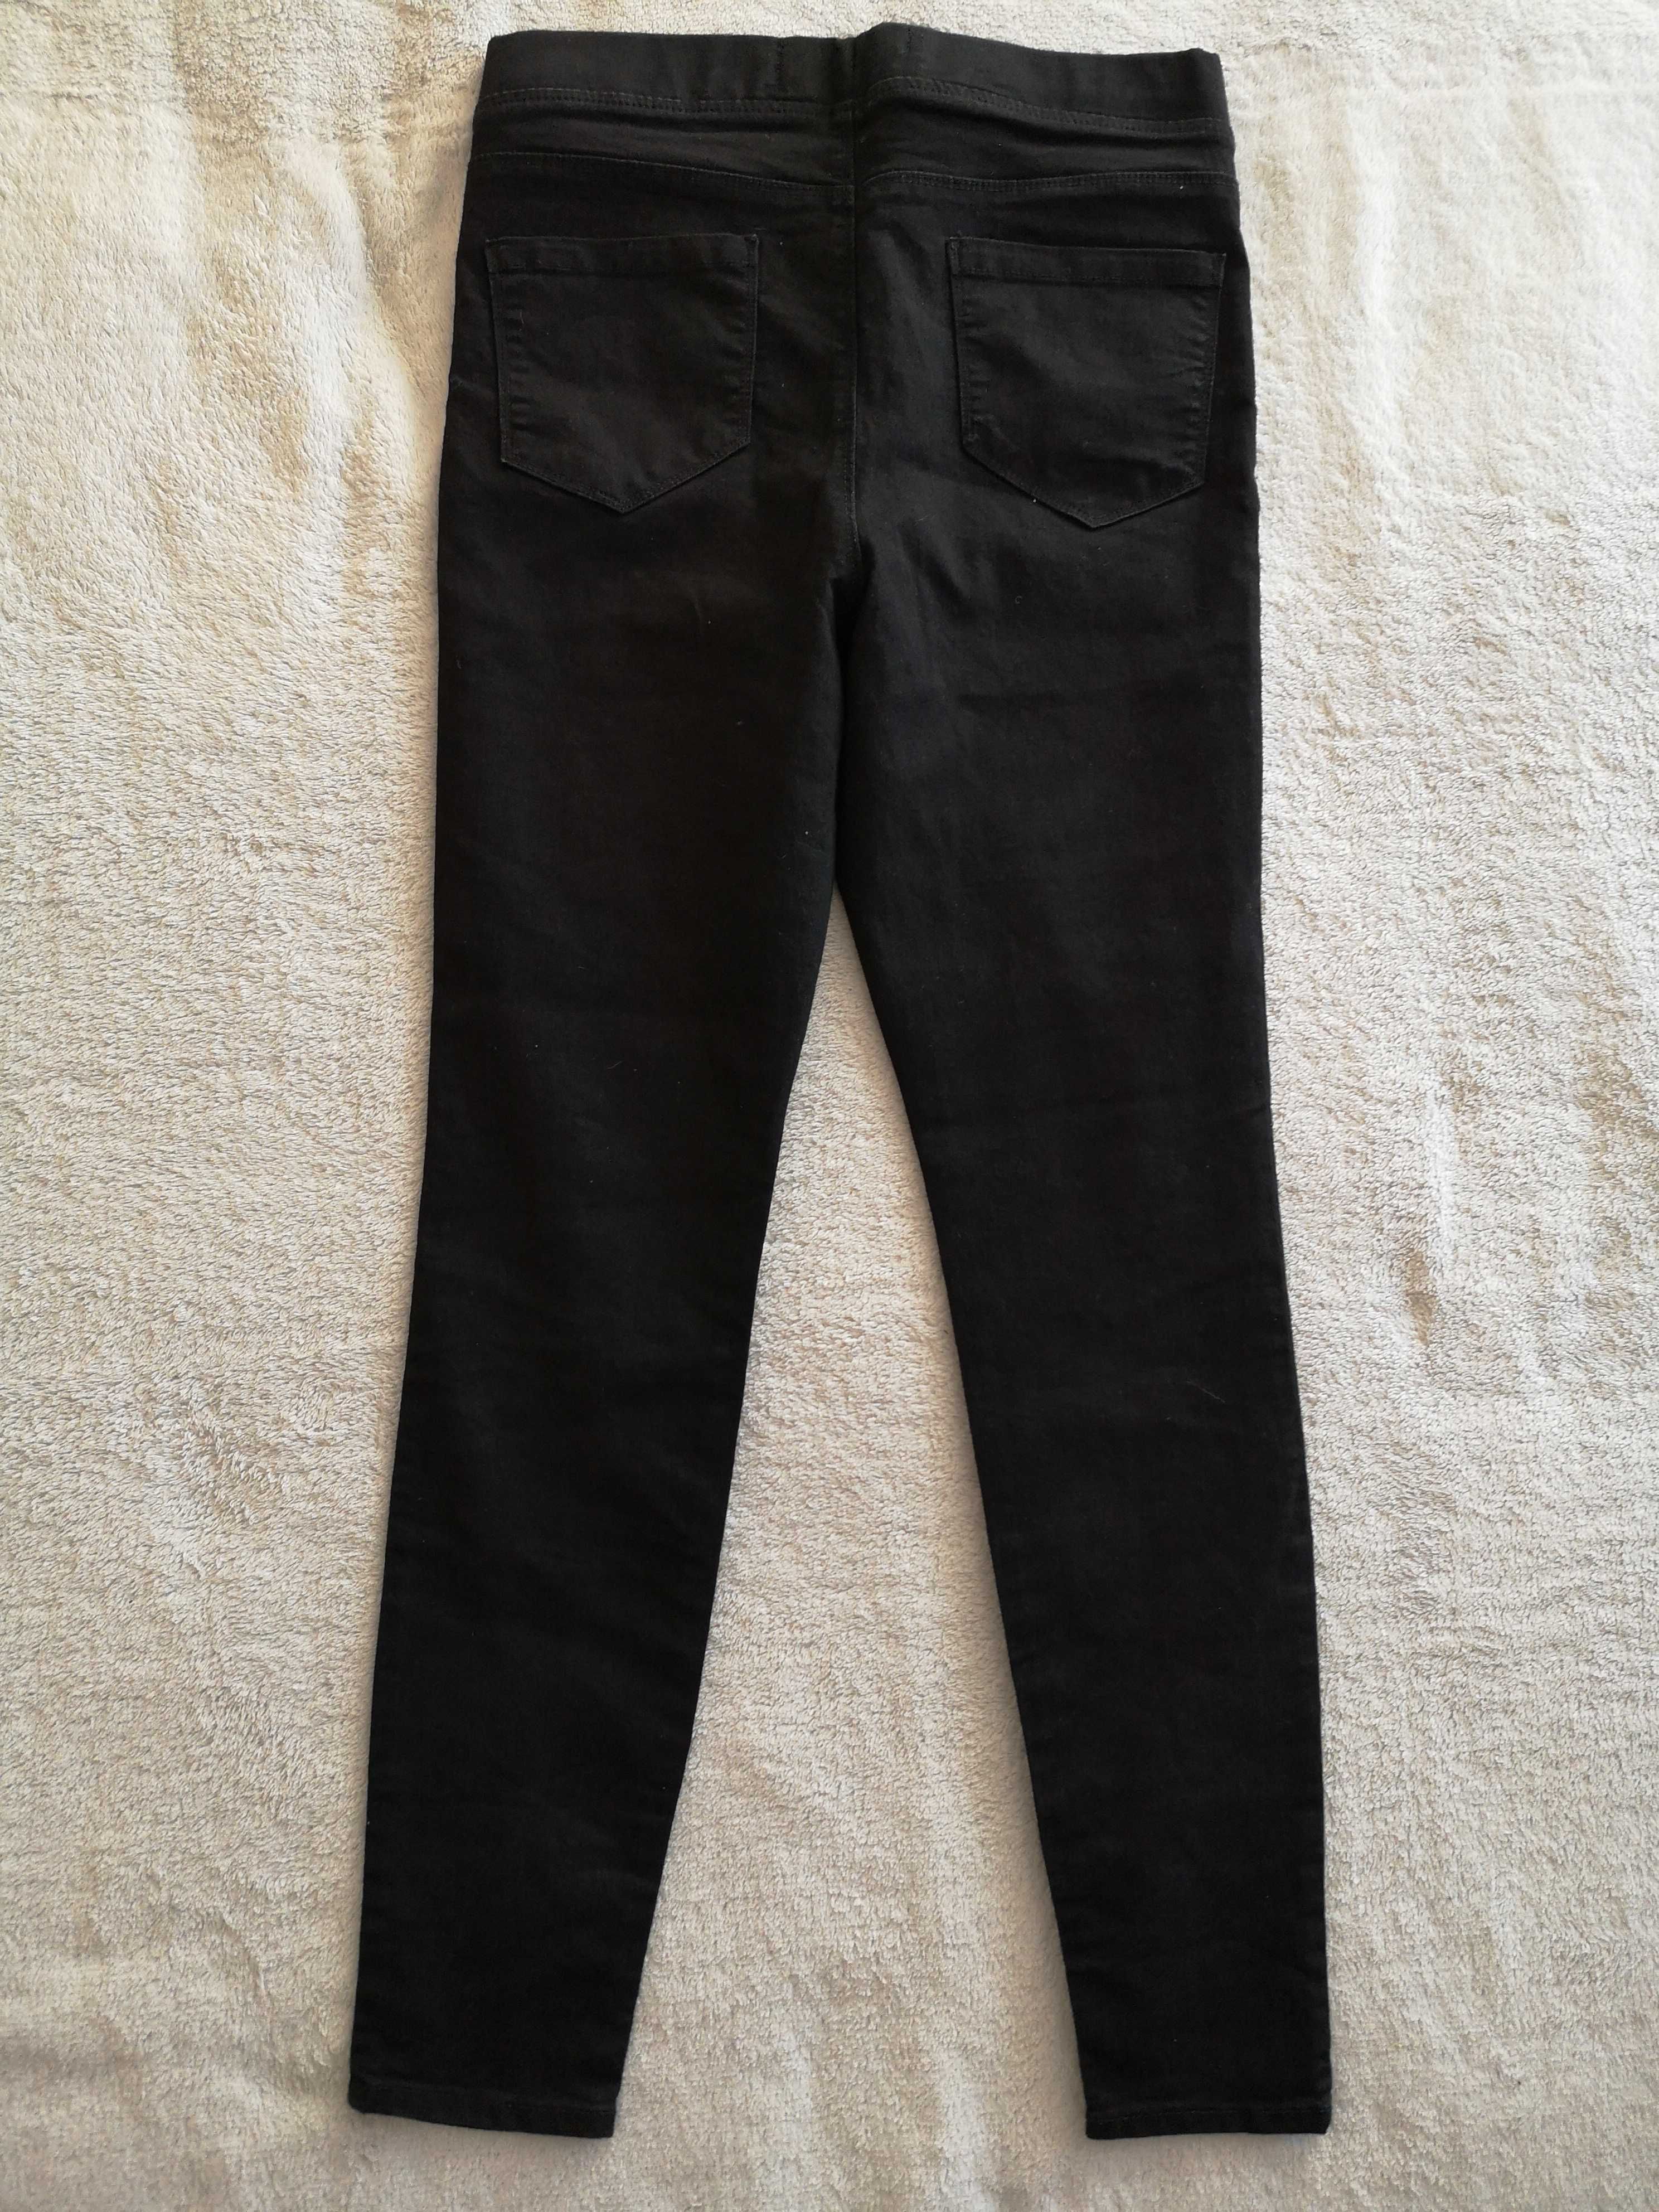 Czarne jeansowe spodnie tregginsy na gumie Pep&Co 40 jak nowe